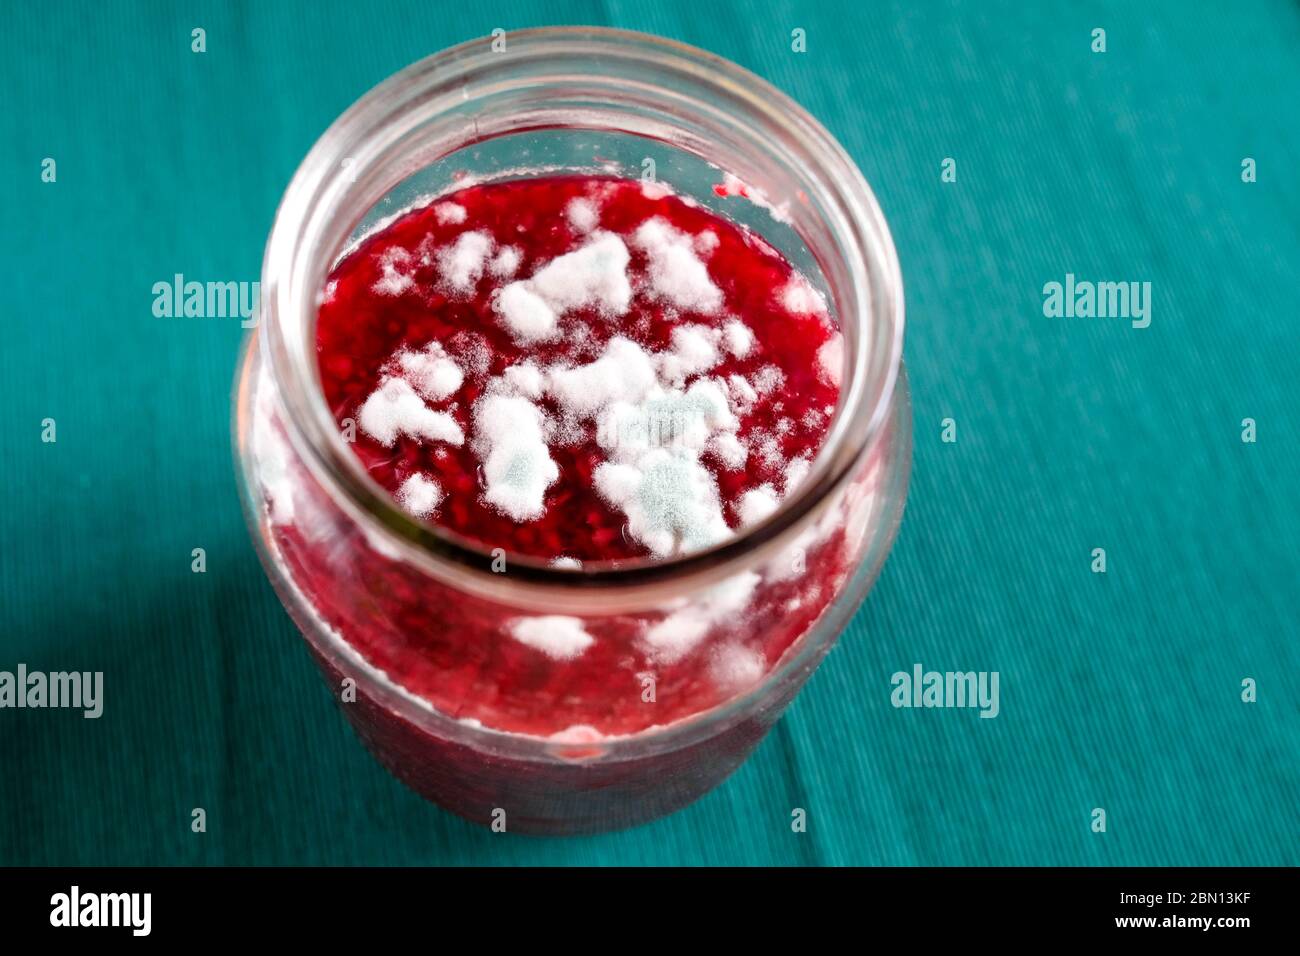 Pilze wachsen auf Marmelade. Verdorbenes Produkt in einem Glasgefäß. Blick von oben. Stockfoto